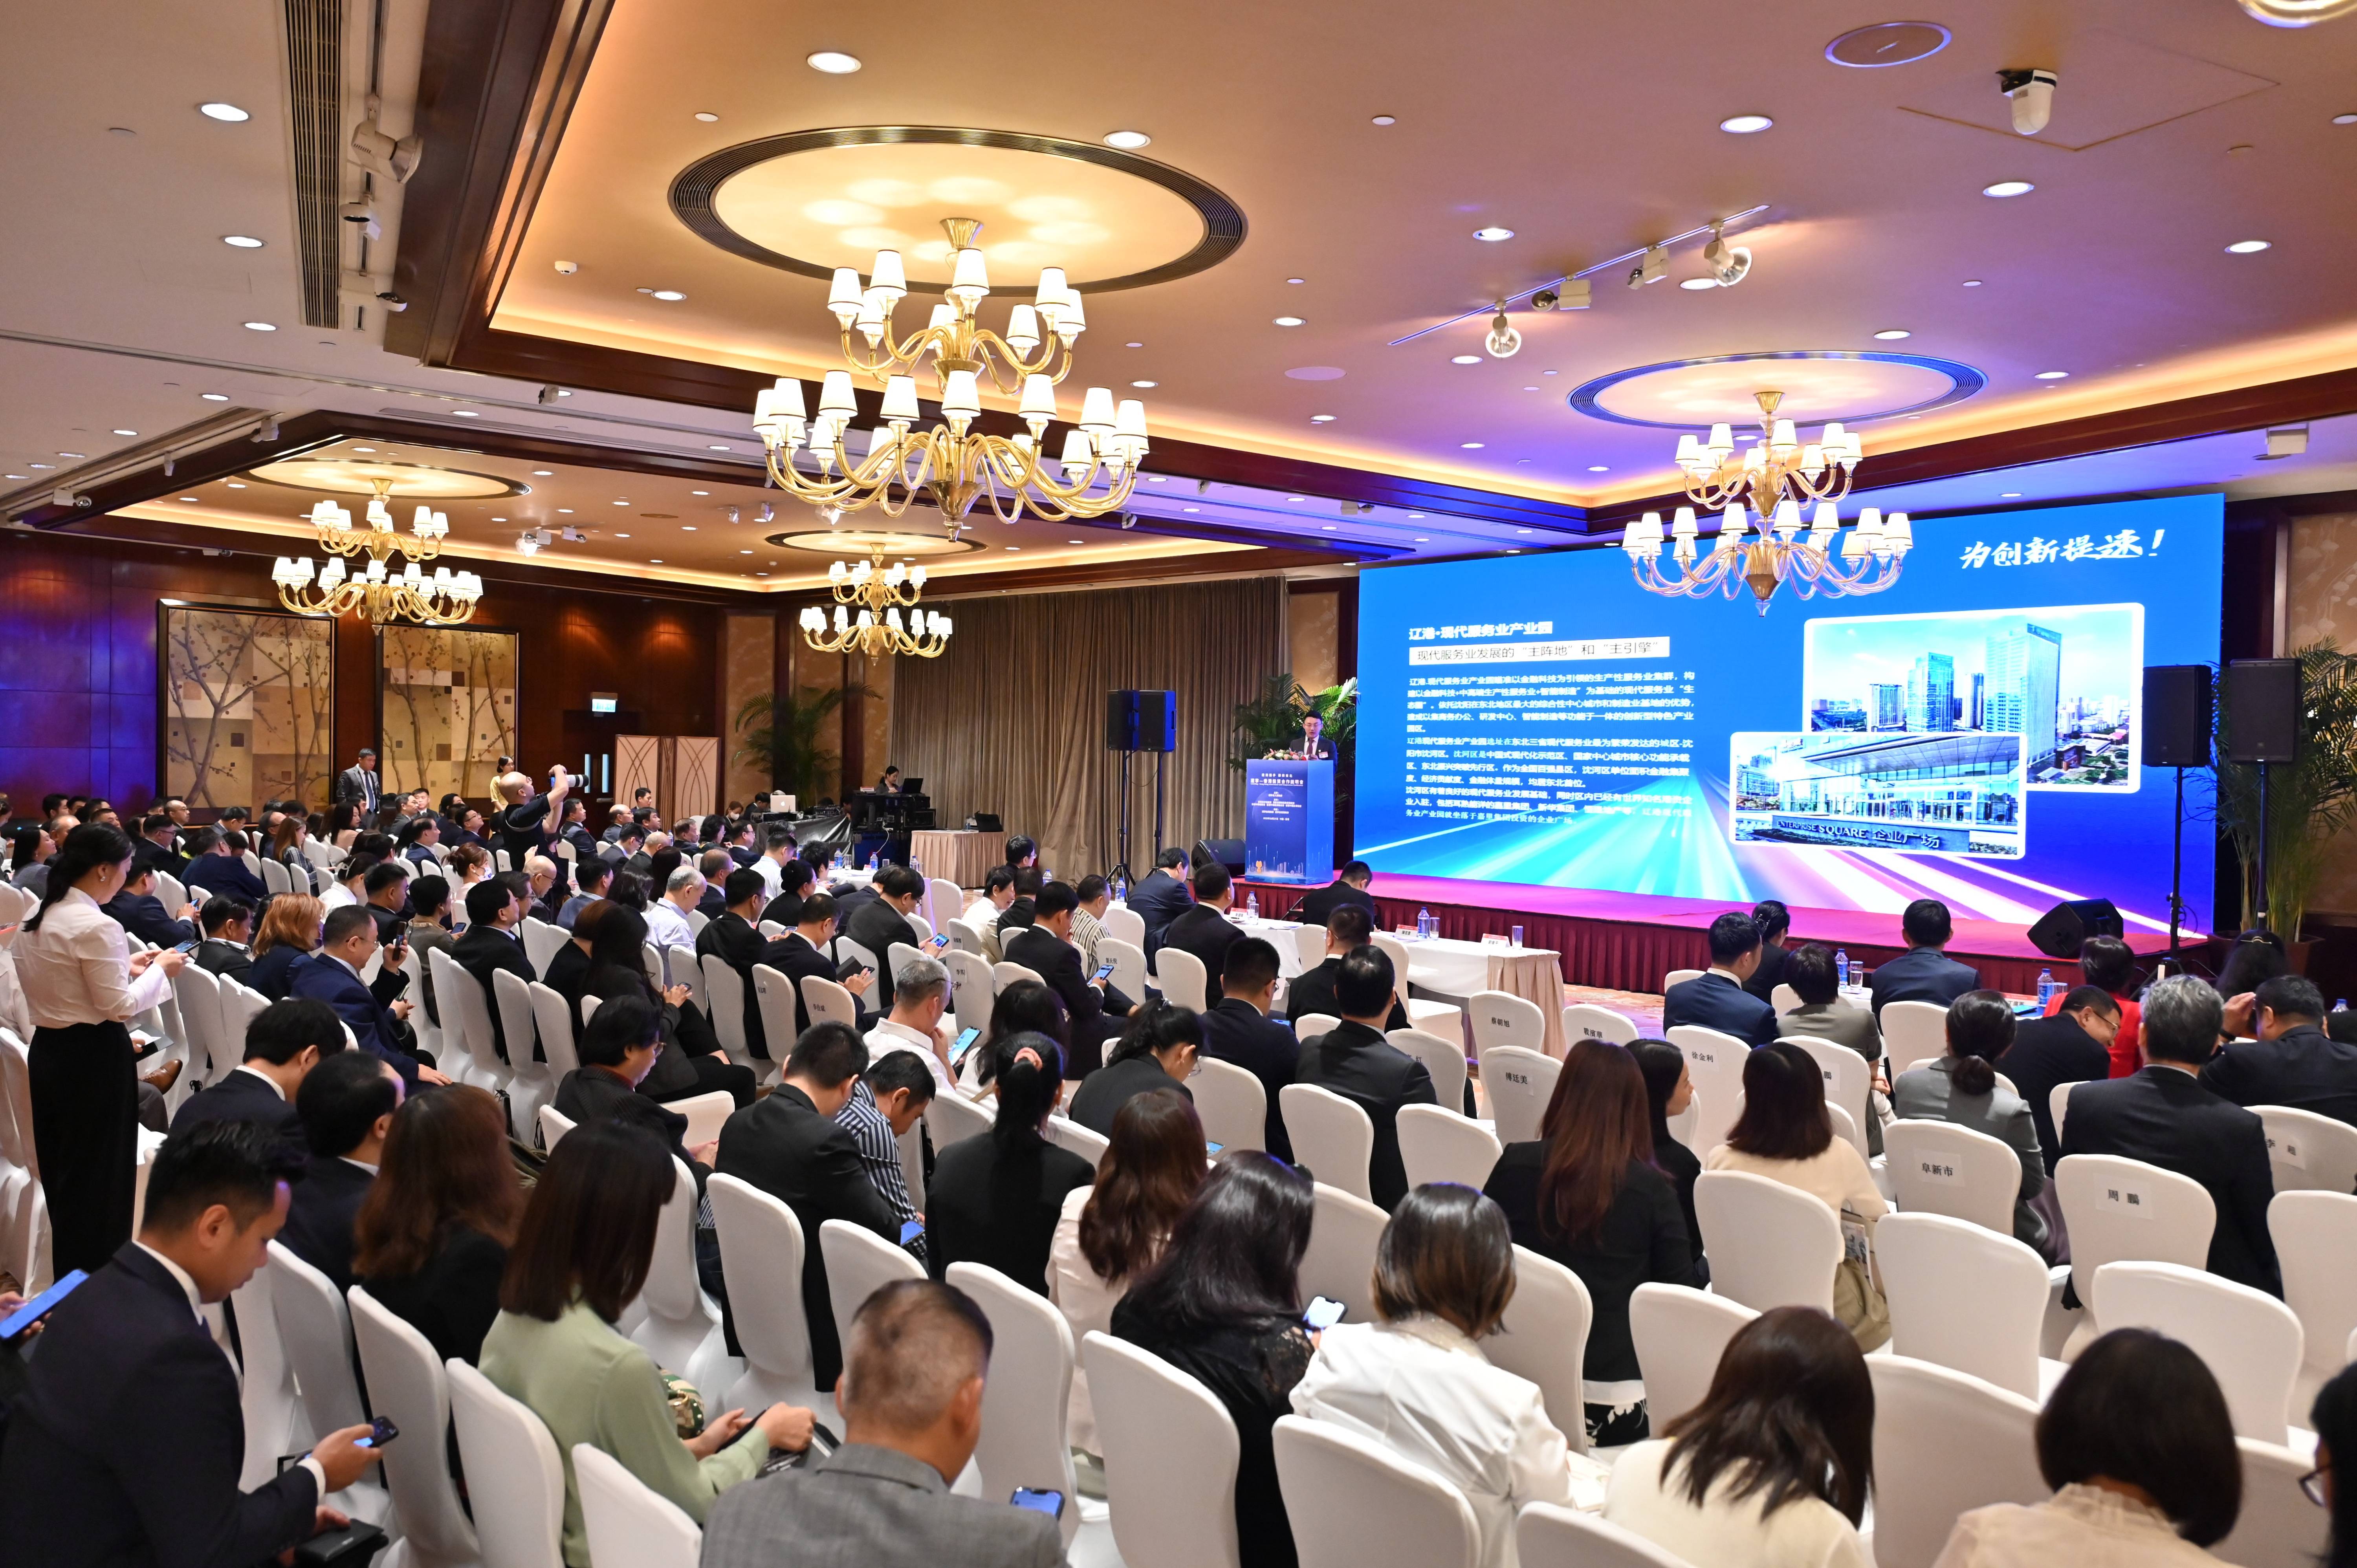 「遼寧 - 香港投資合作說明會」在港舉行